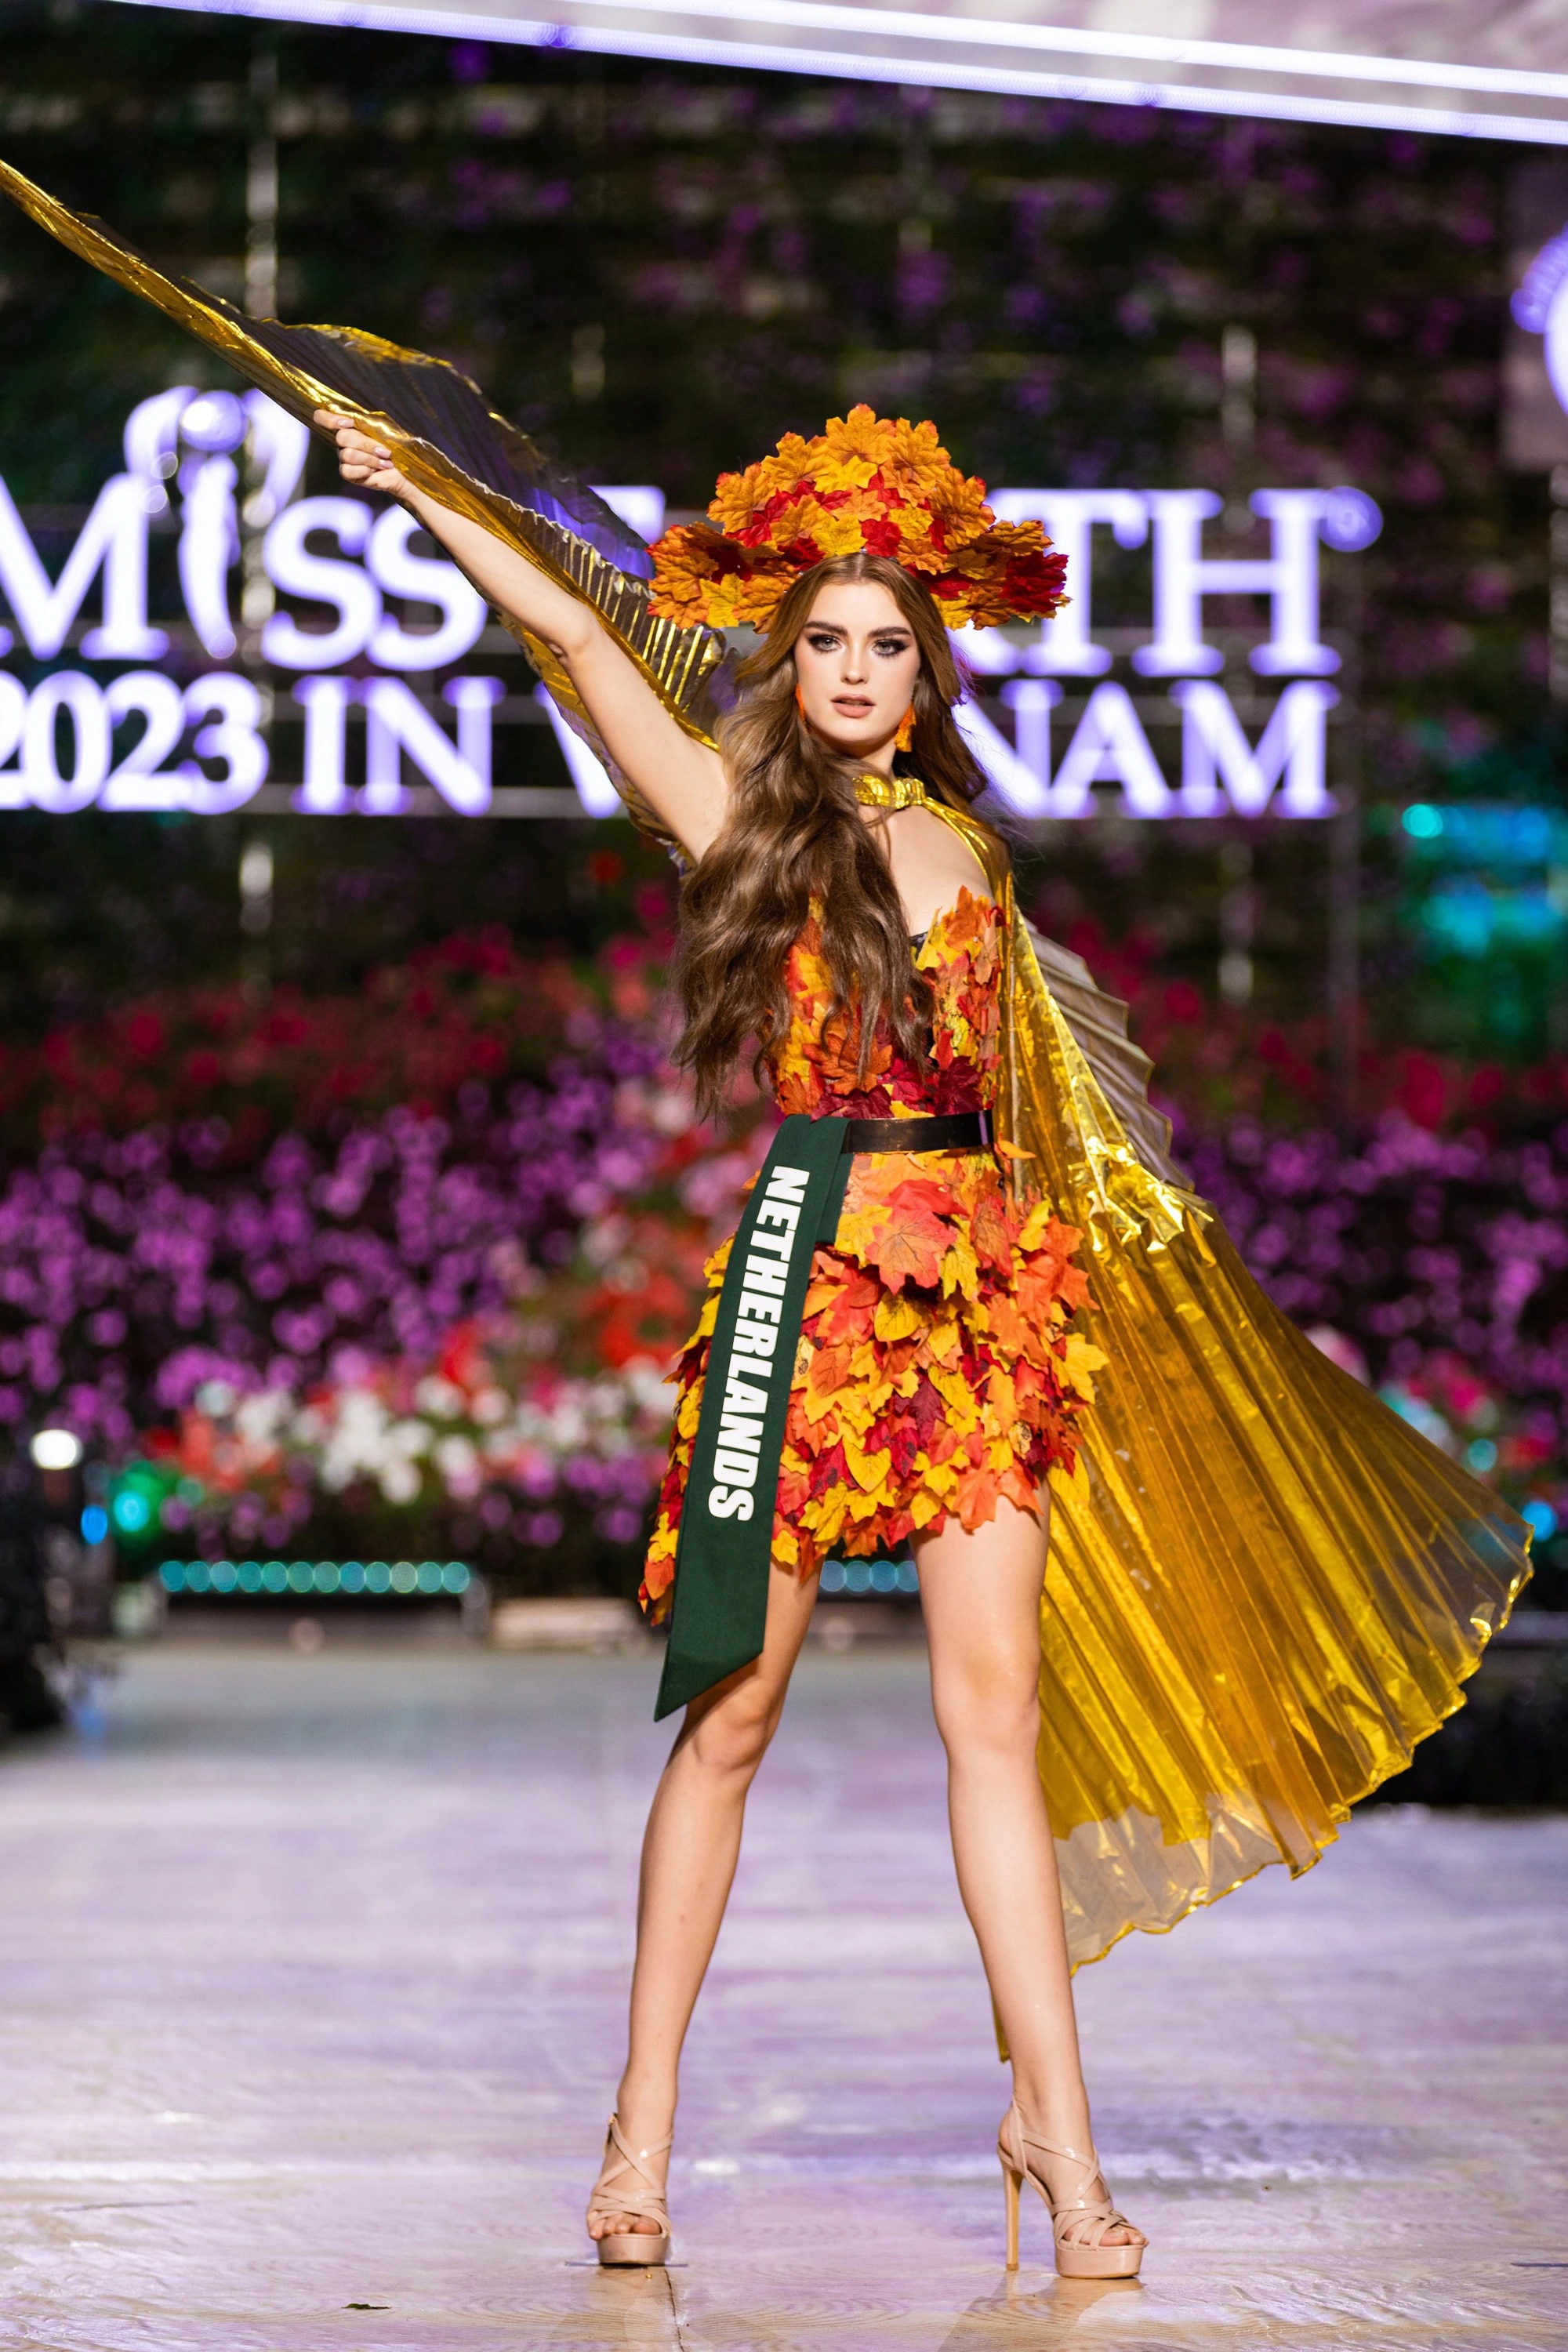 Bán kết Miss Earth 2023 màn trình Trang phục Dân tộc bùng nổ hình ảnh cỏ hoa, muông thú - Ảnh 15.